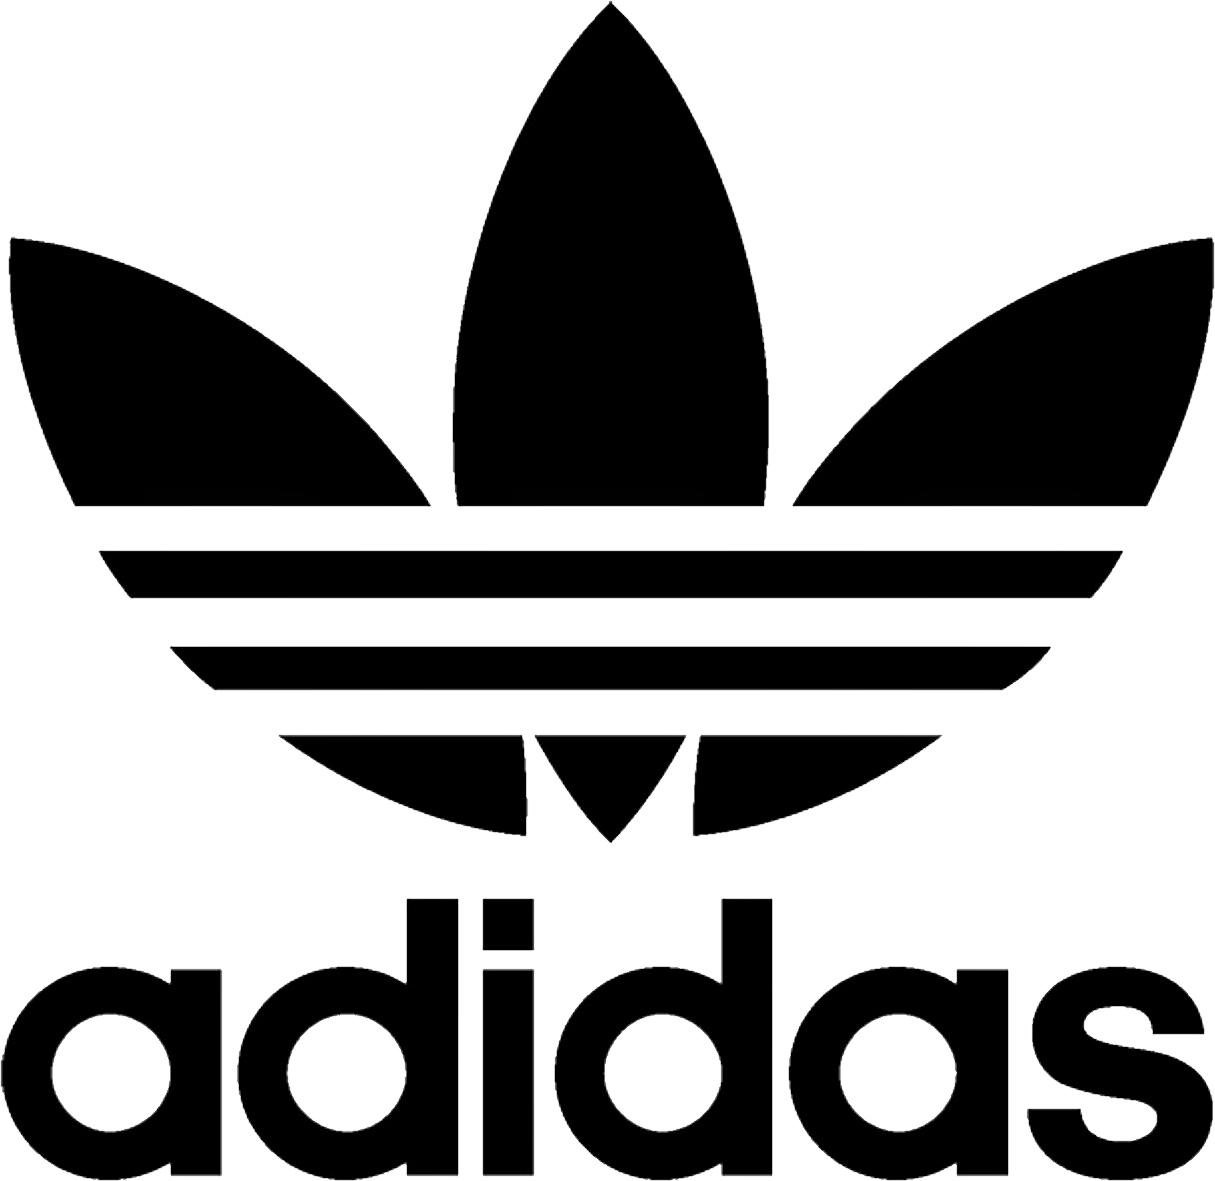 Adidas Logo PNG Transparent